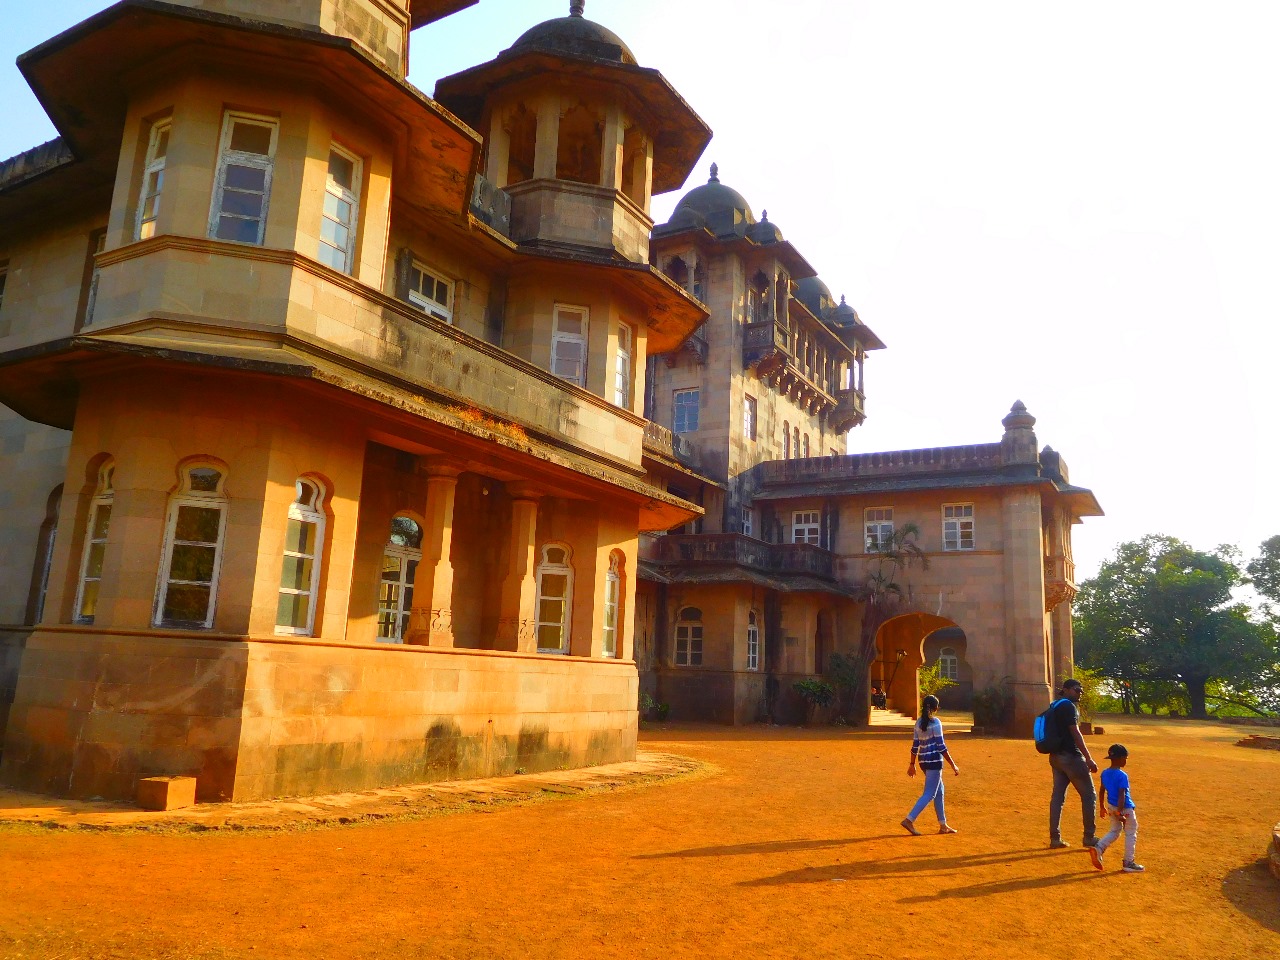 The famous Jai Vilas Palace